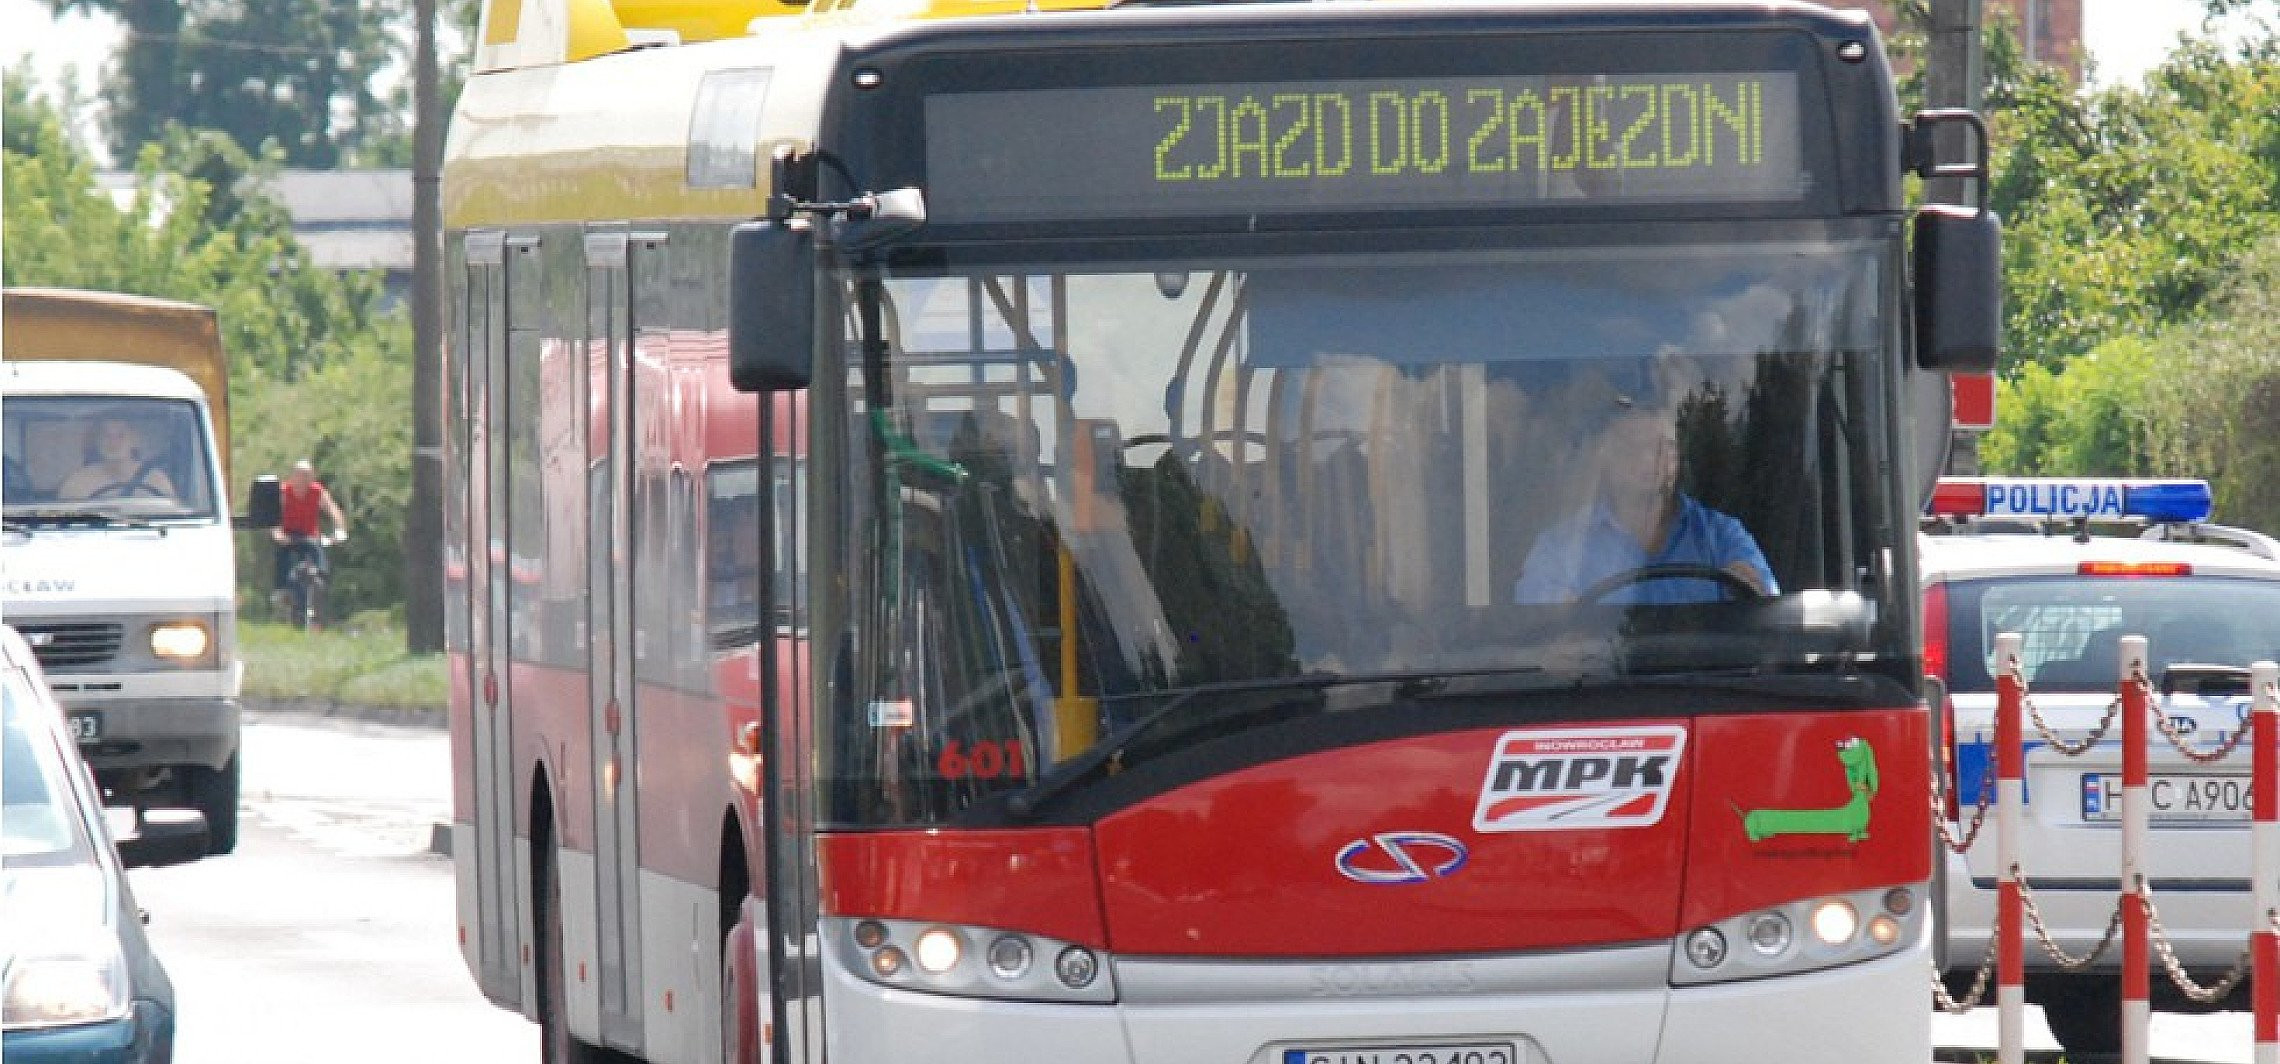 Inowrocław - Kolejne ograniczenia w kursowaniu autobusów